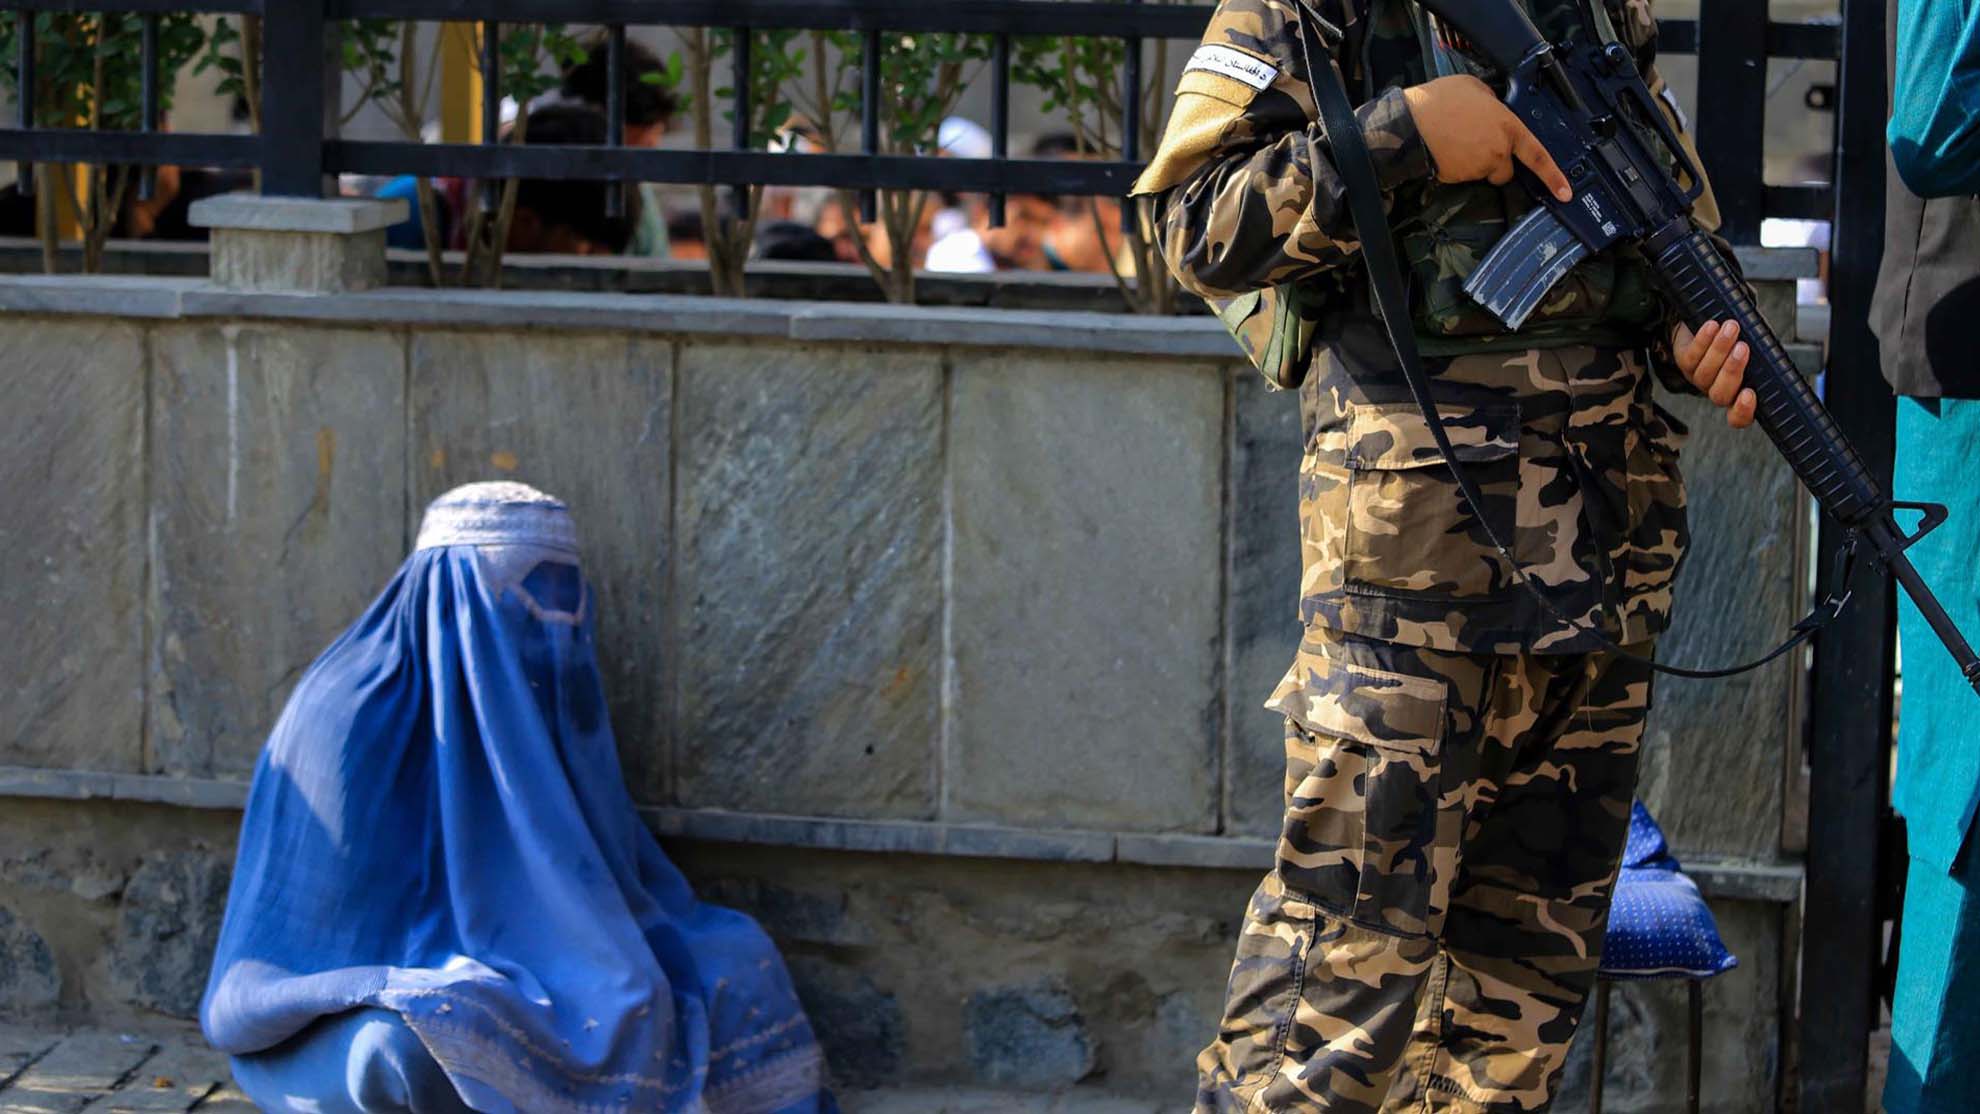 “Crisis de derechos humanos” en Afganistán: advierten sobre autoritarismo y terror